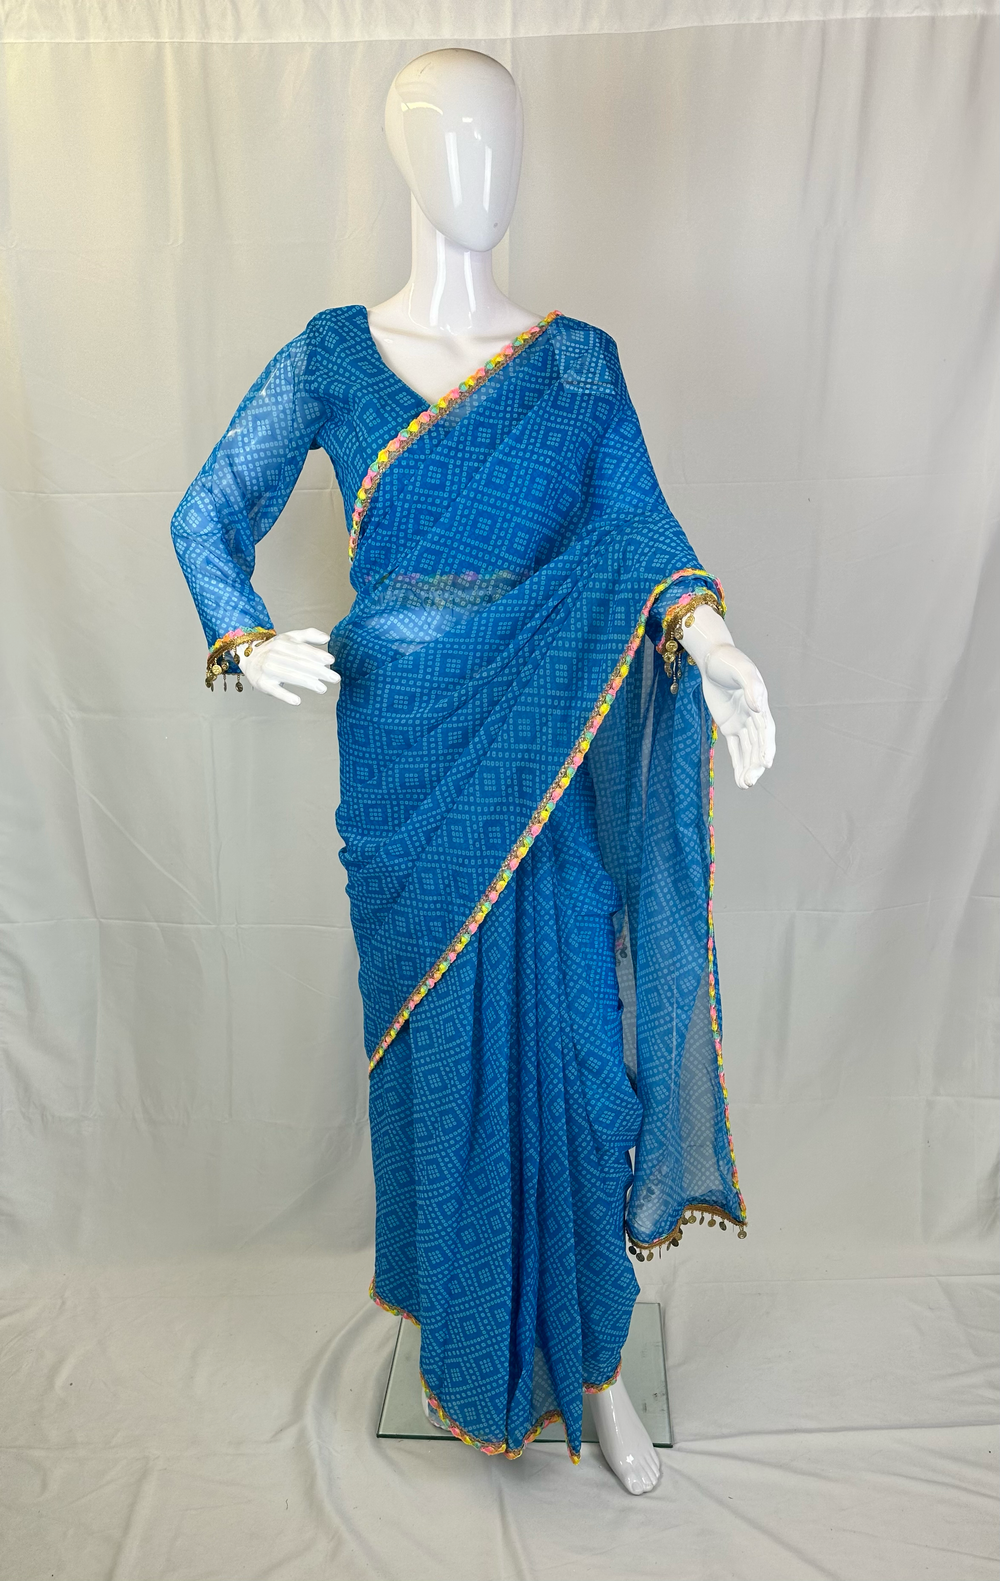 Vibrant Blue Chiffon Bandhani Print Saree with Lace Patti Border & Stitched Blouse - Shree Shringar